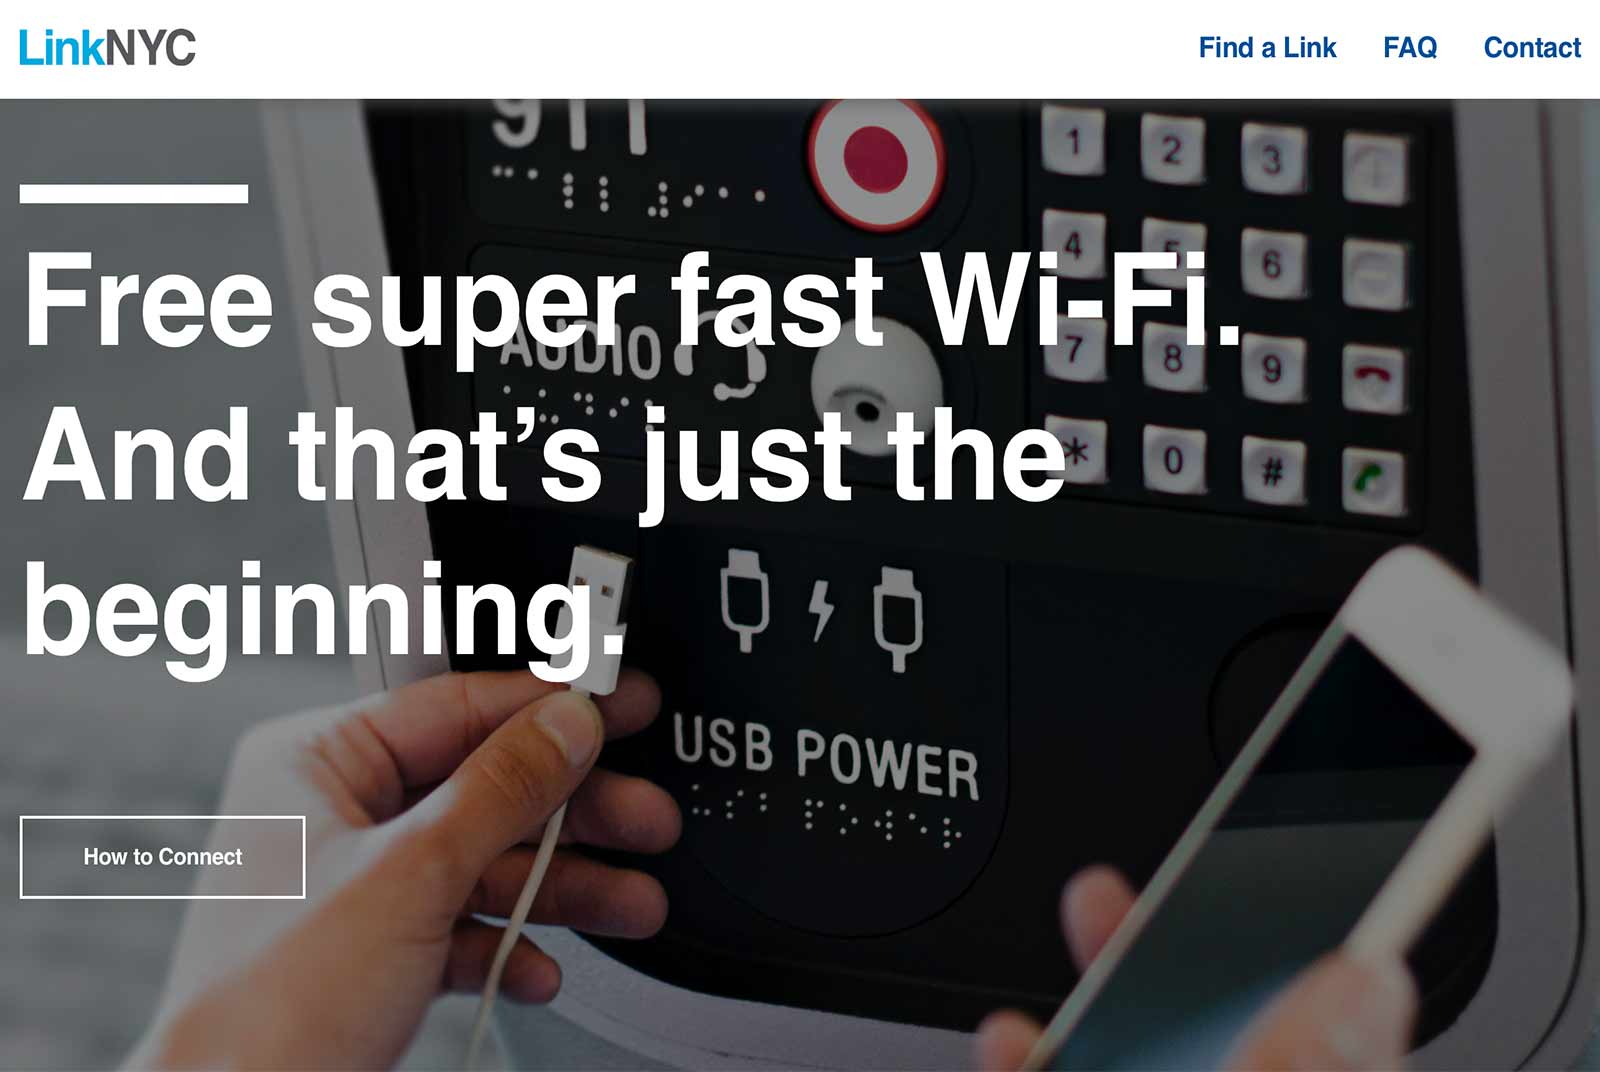 LinkNYC提供紐約市民免費Wi-Fi，其中卻有侵犯隱私的爭議。